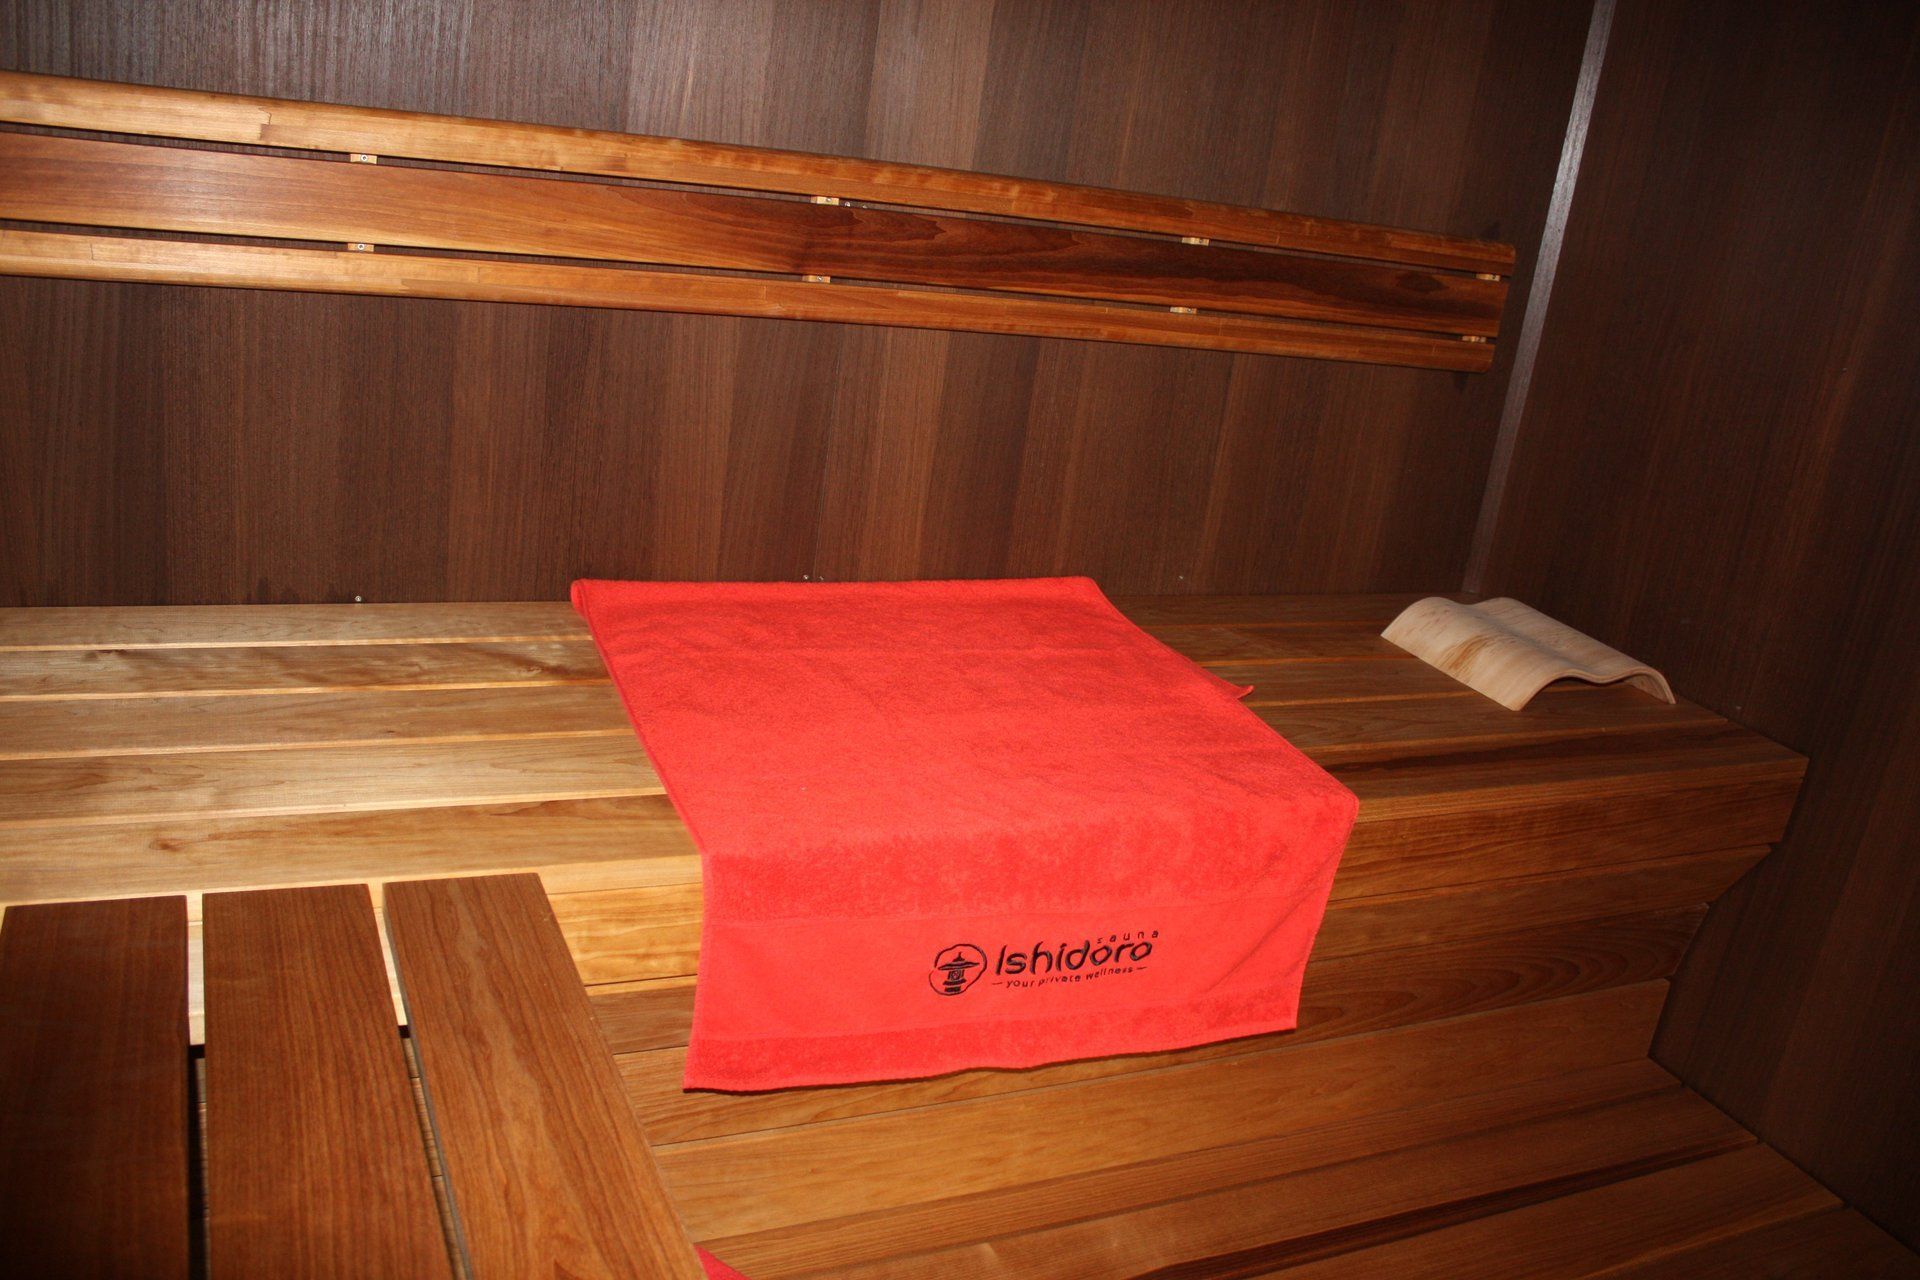 Ishidoro handdoek in sauna